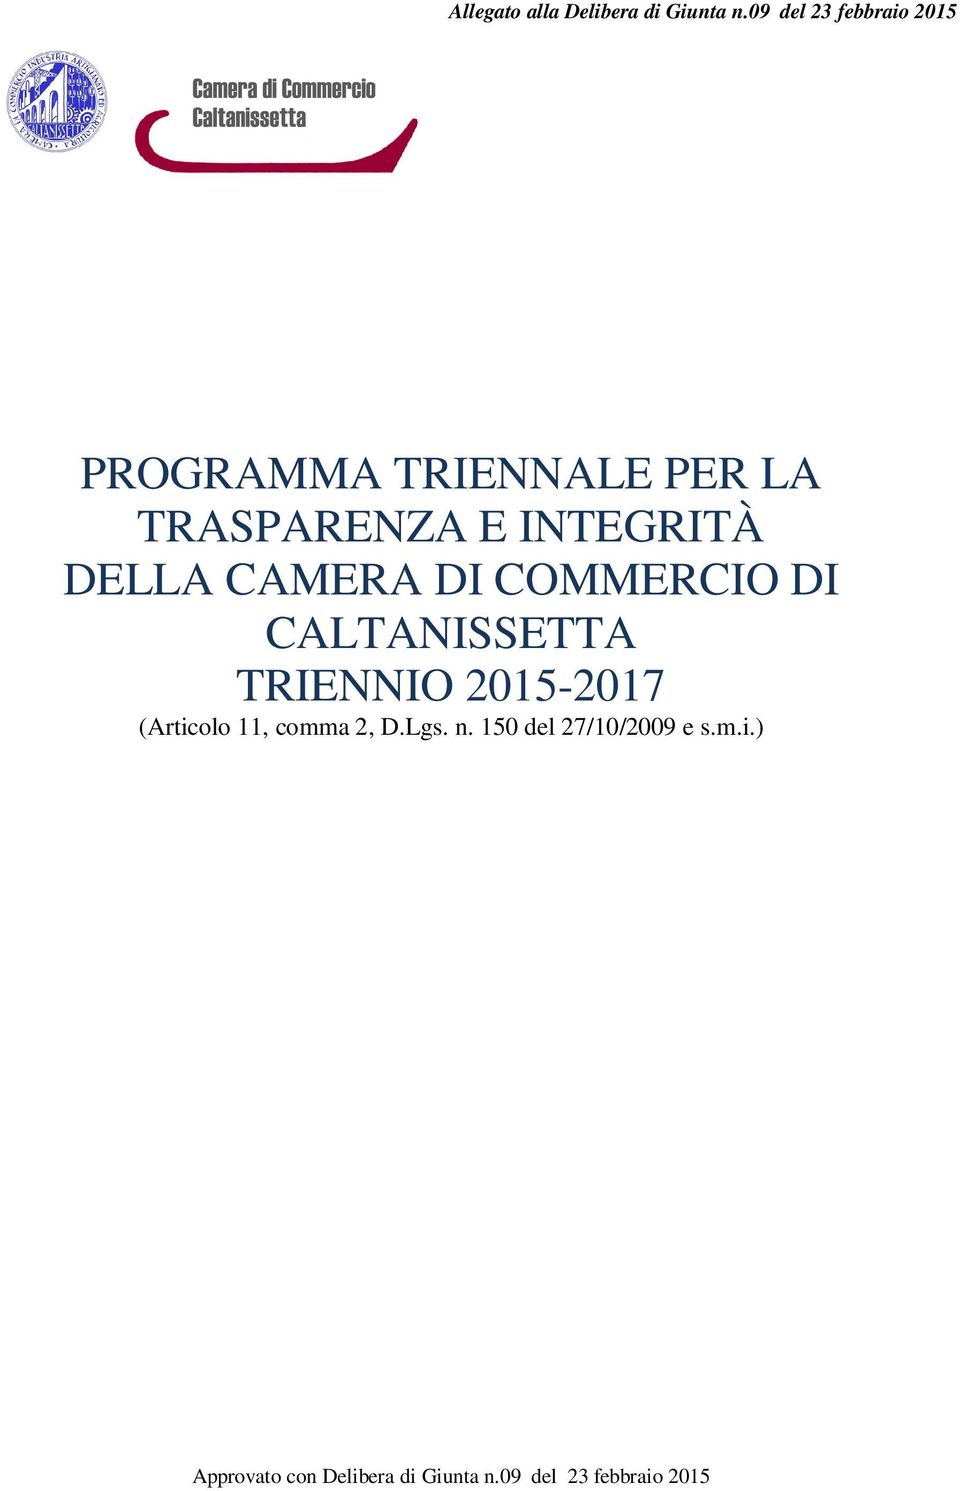 INTEGRITÀ DELLA CAMERA DI COMMERCIO DI CALTANISSETTA TRIENNIO 2015-2017